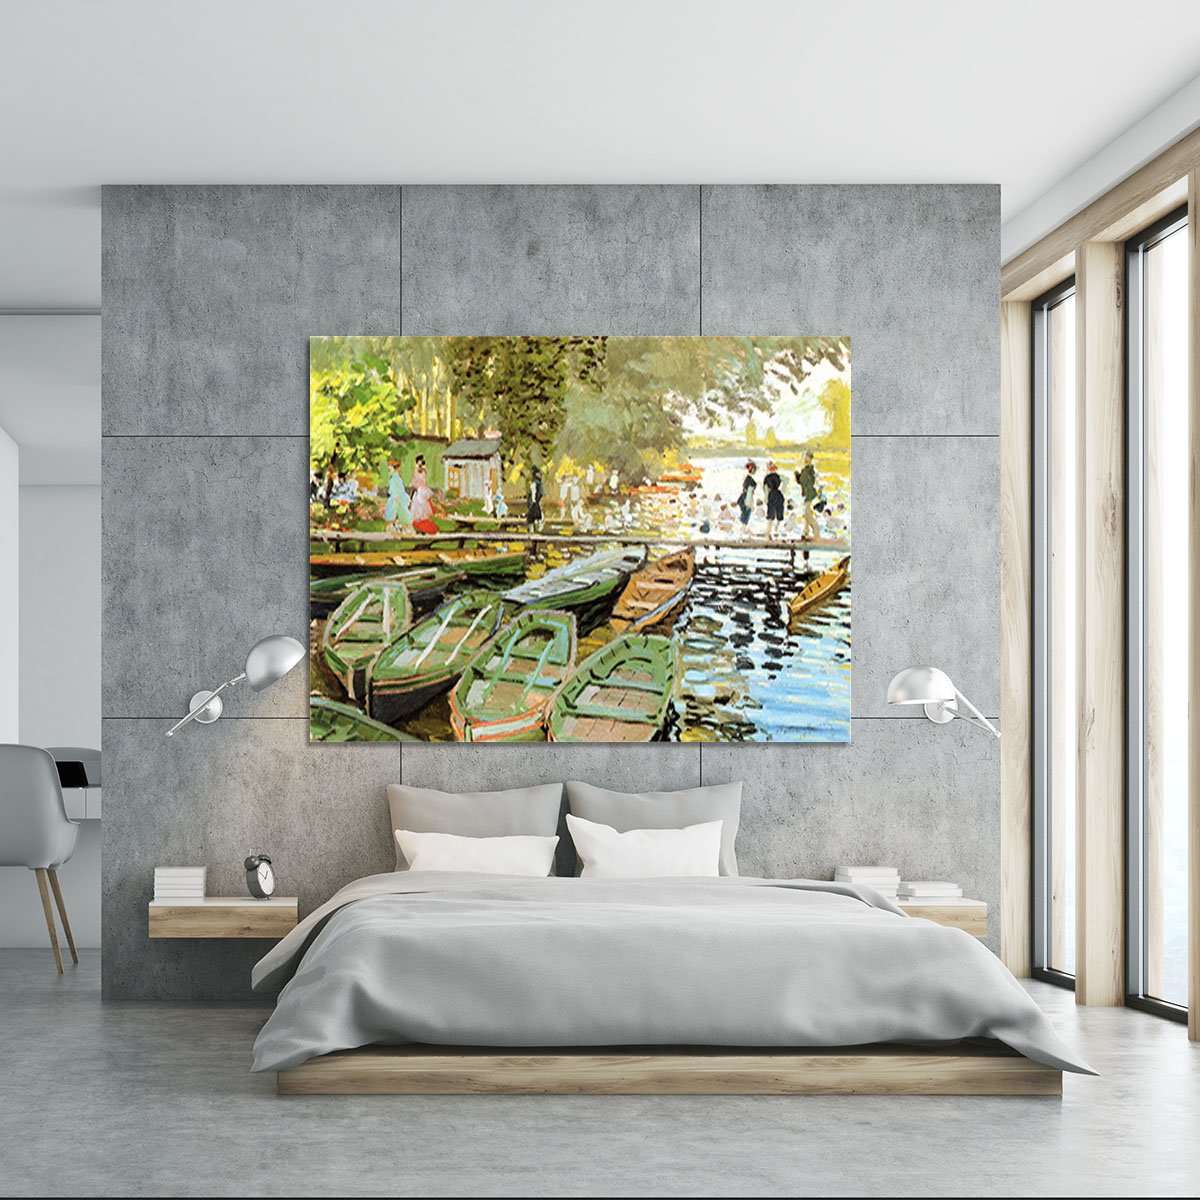 Les bain de la Grenouillere by Monet Canvas Print or Poster